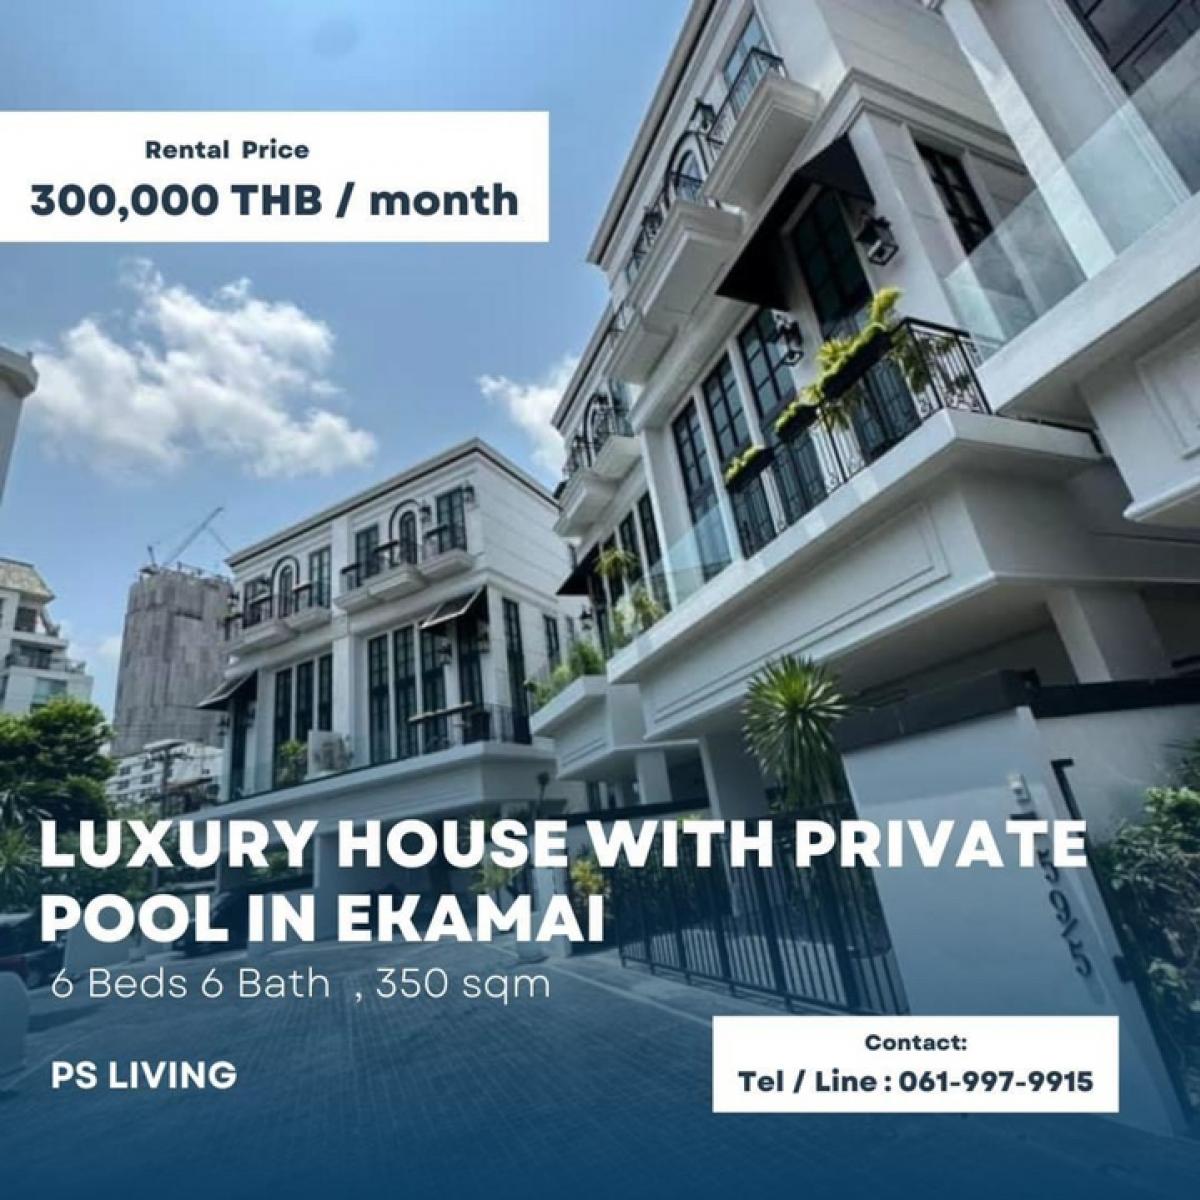 ให้เช่าบ้านสุขุมวิท อโศก ทองหล่อ : Rental : Luxury Townhome & Home Office with Private Pool in Ekamai , 6 beds 6 Bath , 60 sqw , 4 Storeys ** Can Apply For Private Clinic **** Spa & Massage **🔥🔥Rental Price: 300,000 THB / Month🔥🔥#sellinghouses#superluxuryhousebkk#Ultraluxurycondo #